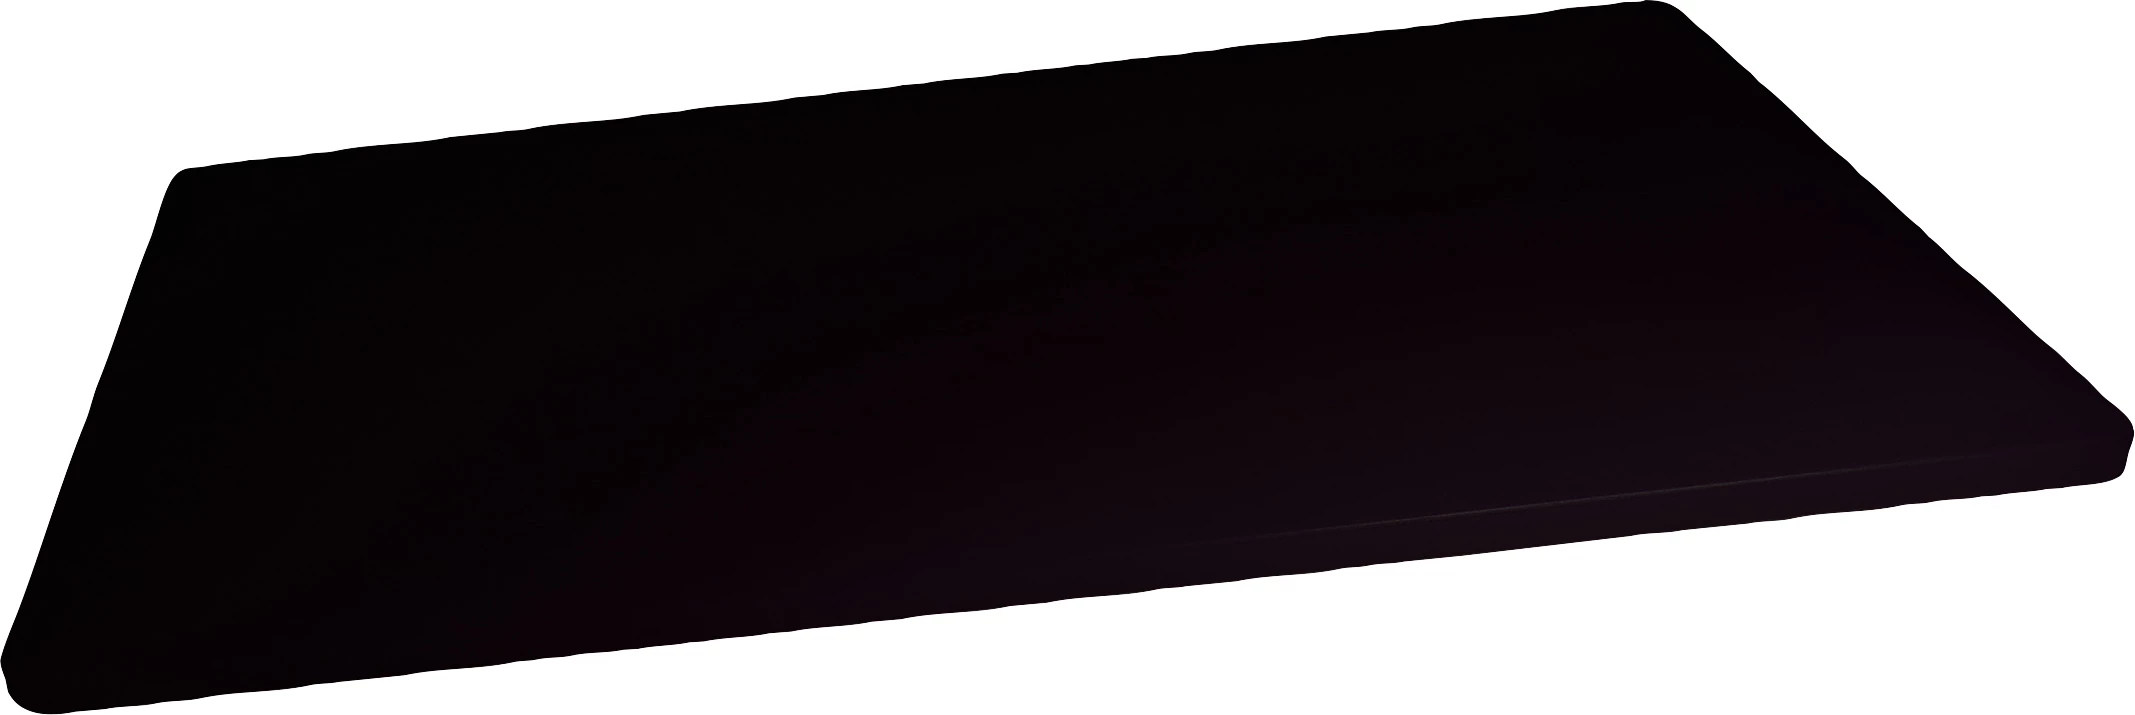 Daloplast skæreplanke, sort, 53 x 30,5 x 1,4 cm